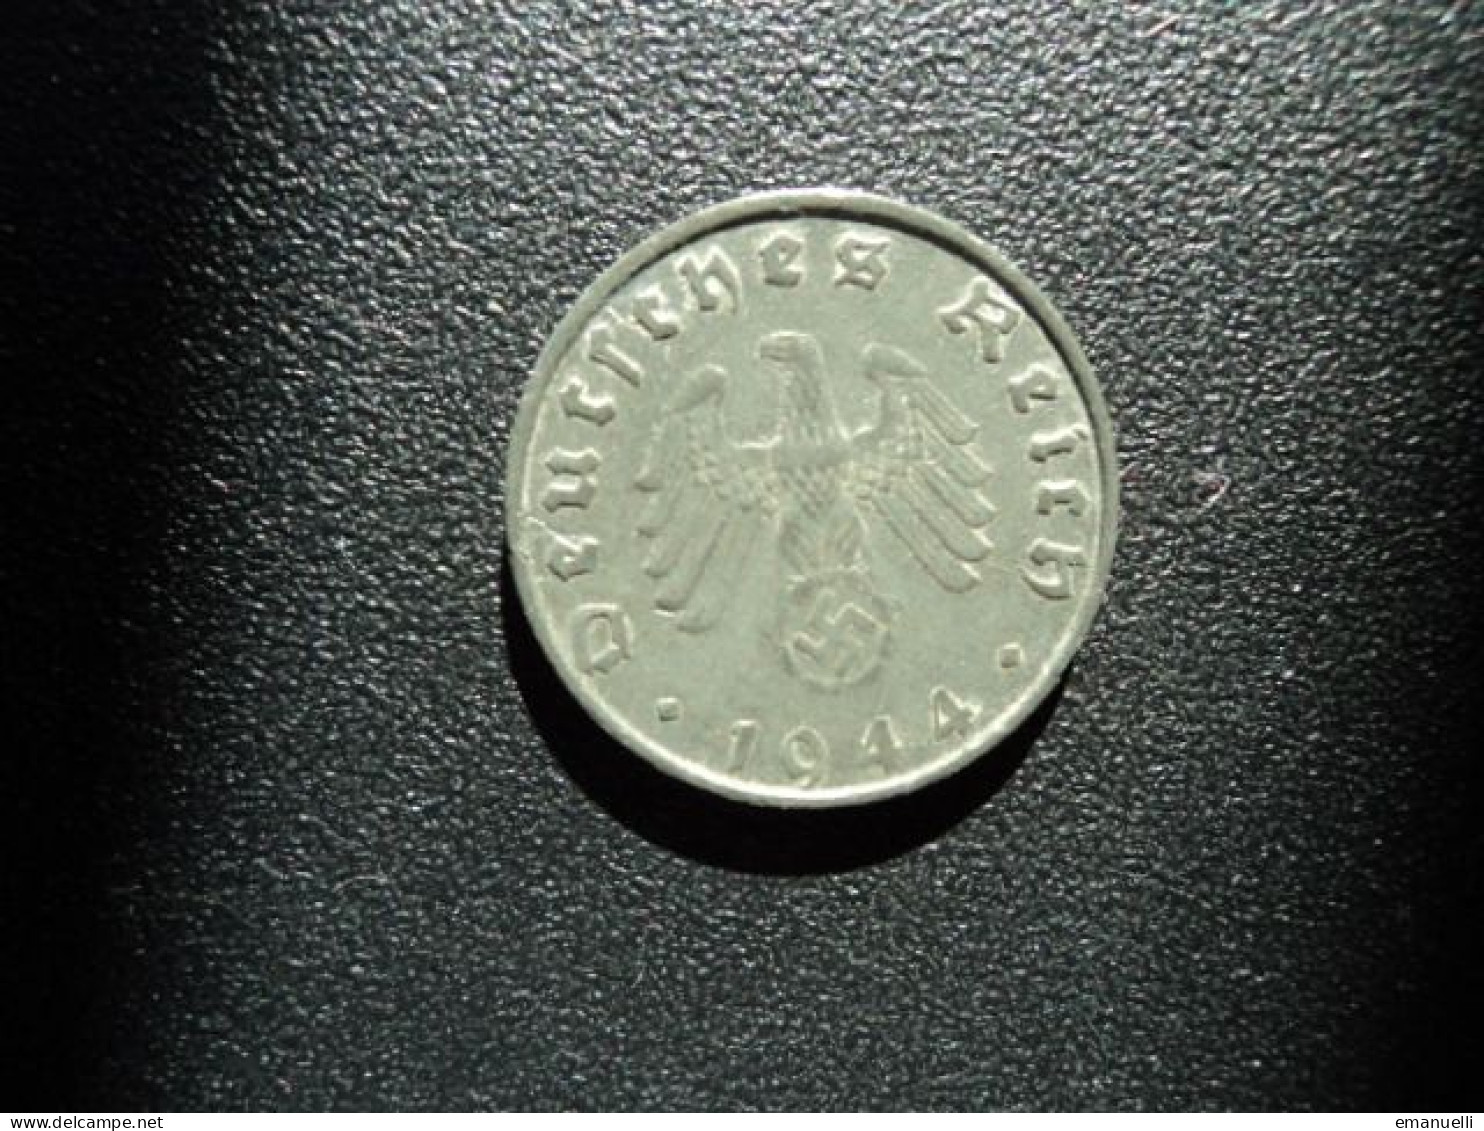 ALLEMAGNE : 10 REICHSPFENNIG   1944 B   KM 101    TTB+ - 10 Reichspfennig